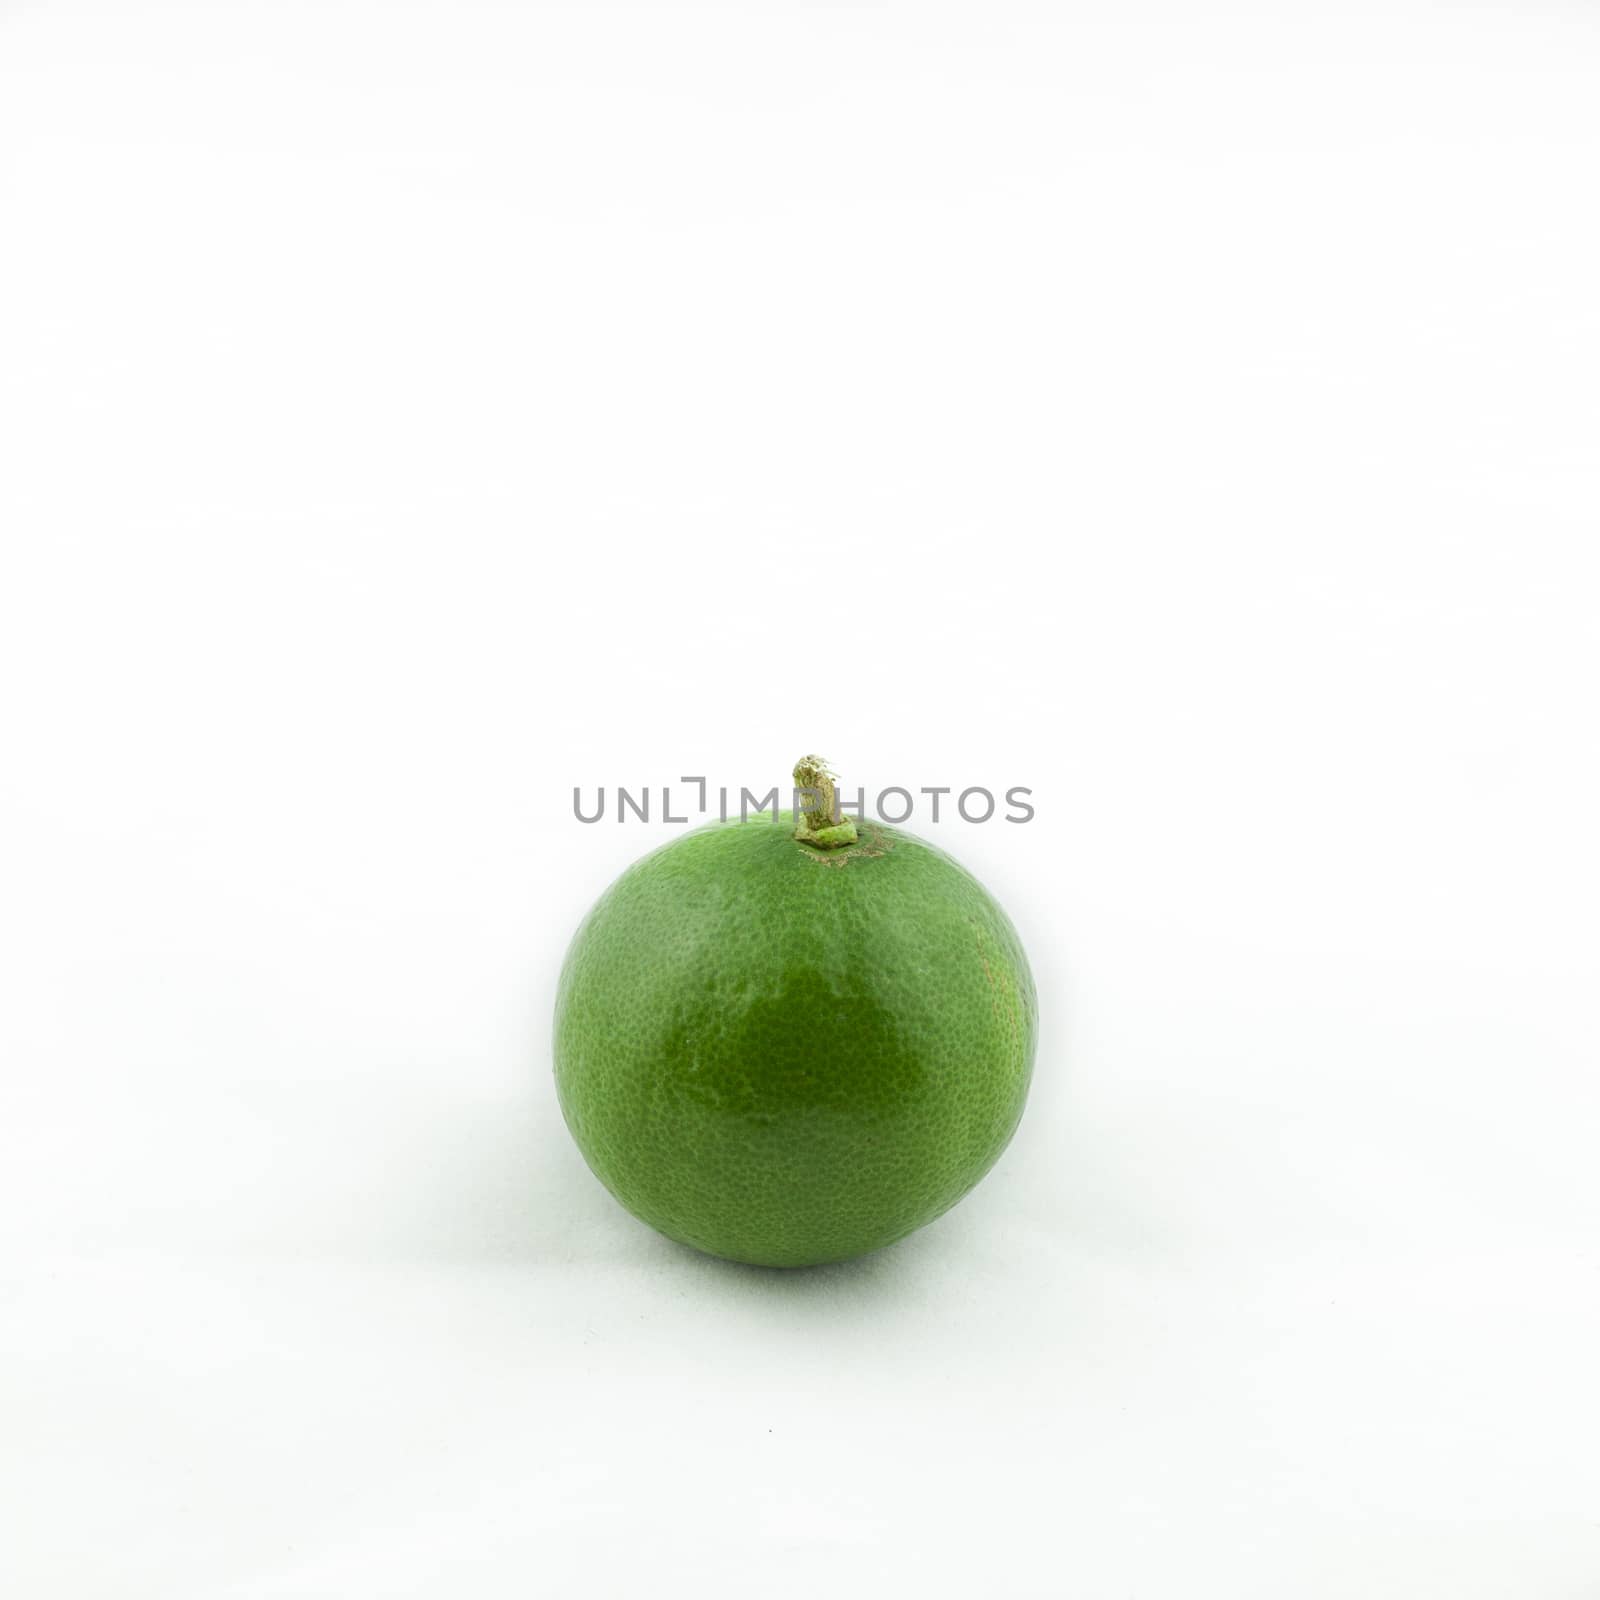 Fresh green lemon isolated on white background. Natural product. Sliced lemon.